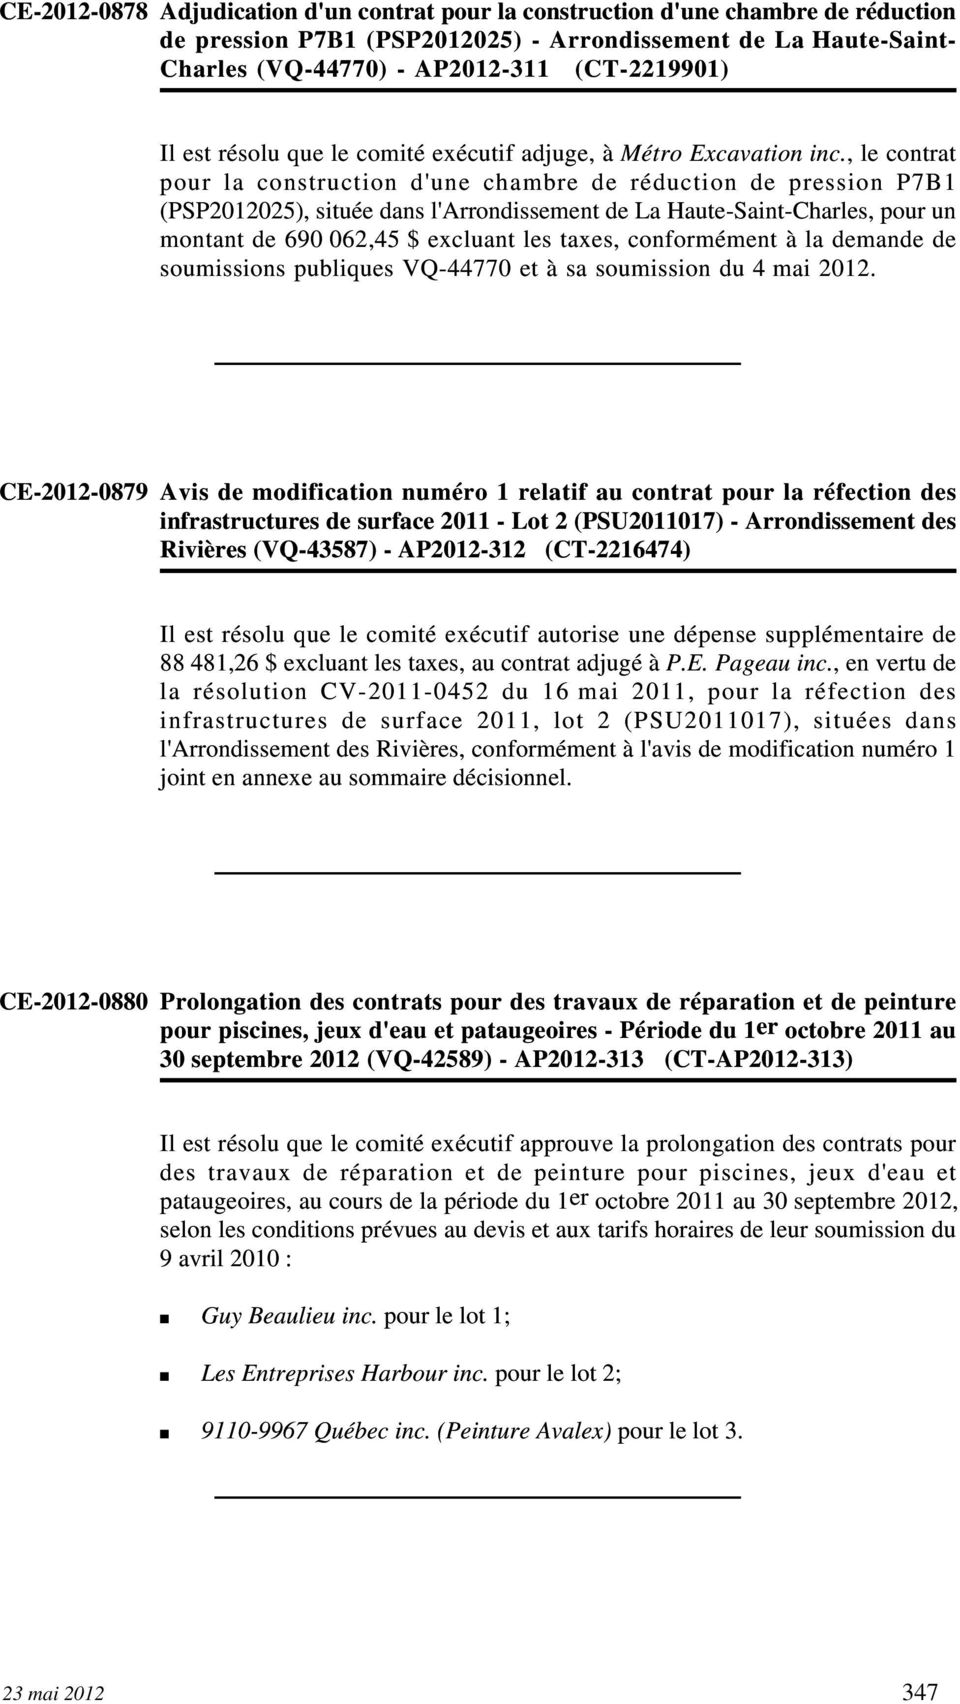 , le contrat pour la construction d'une chambre de réduction de pression P7B1 (PSP2012025), située dans l'arrondissement de La Haute-Saint-Charles, pour un montant de 690 062,45 $ excluant les taxes,